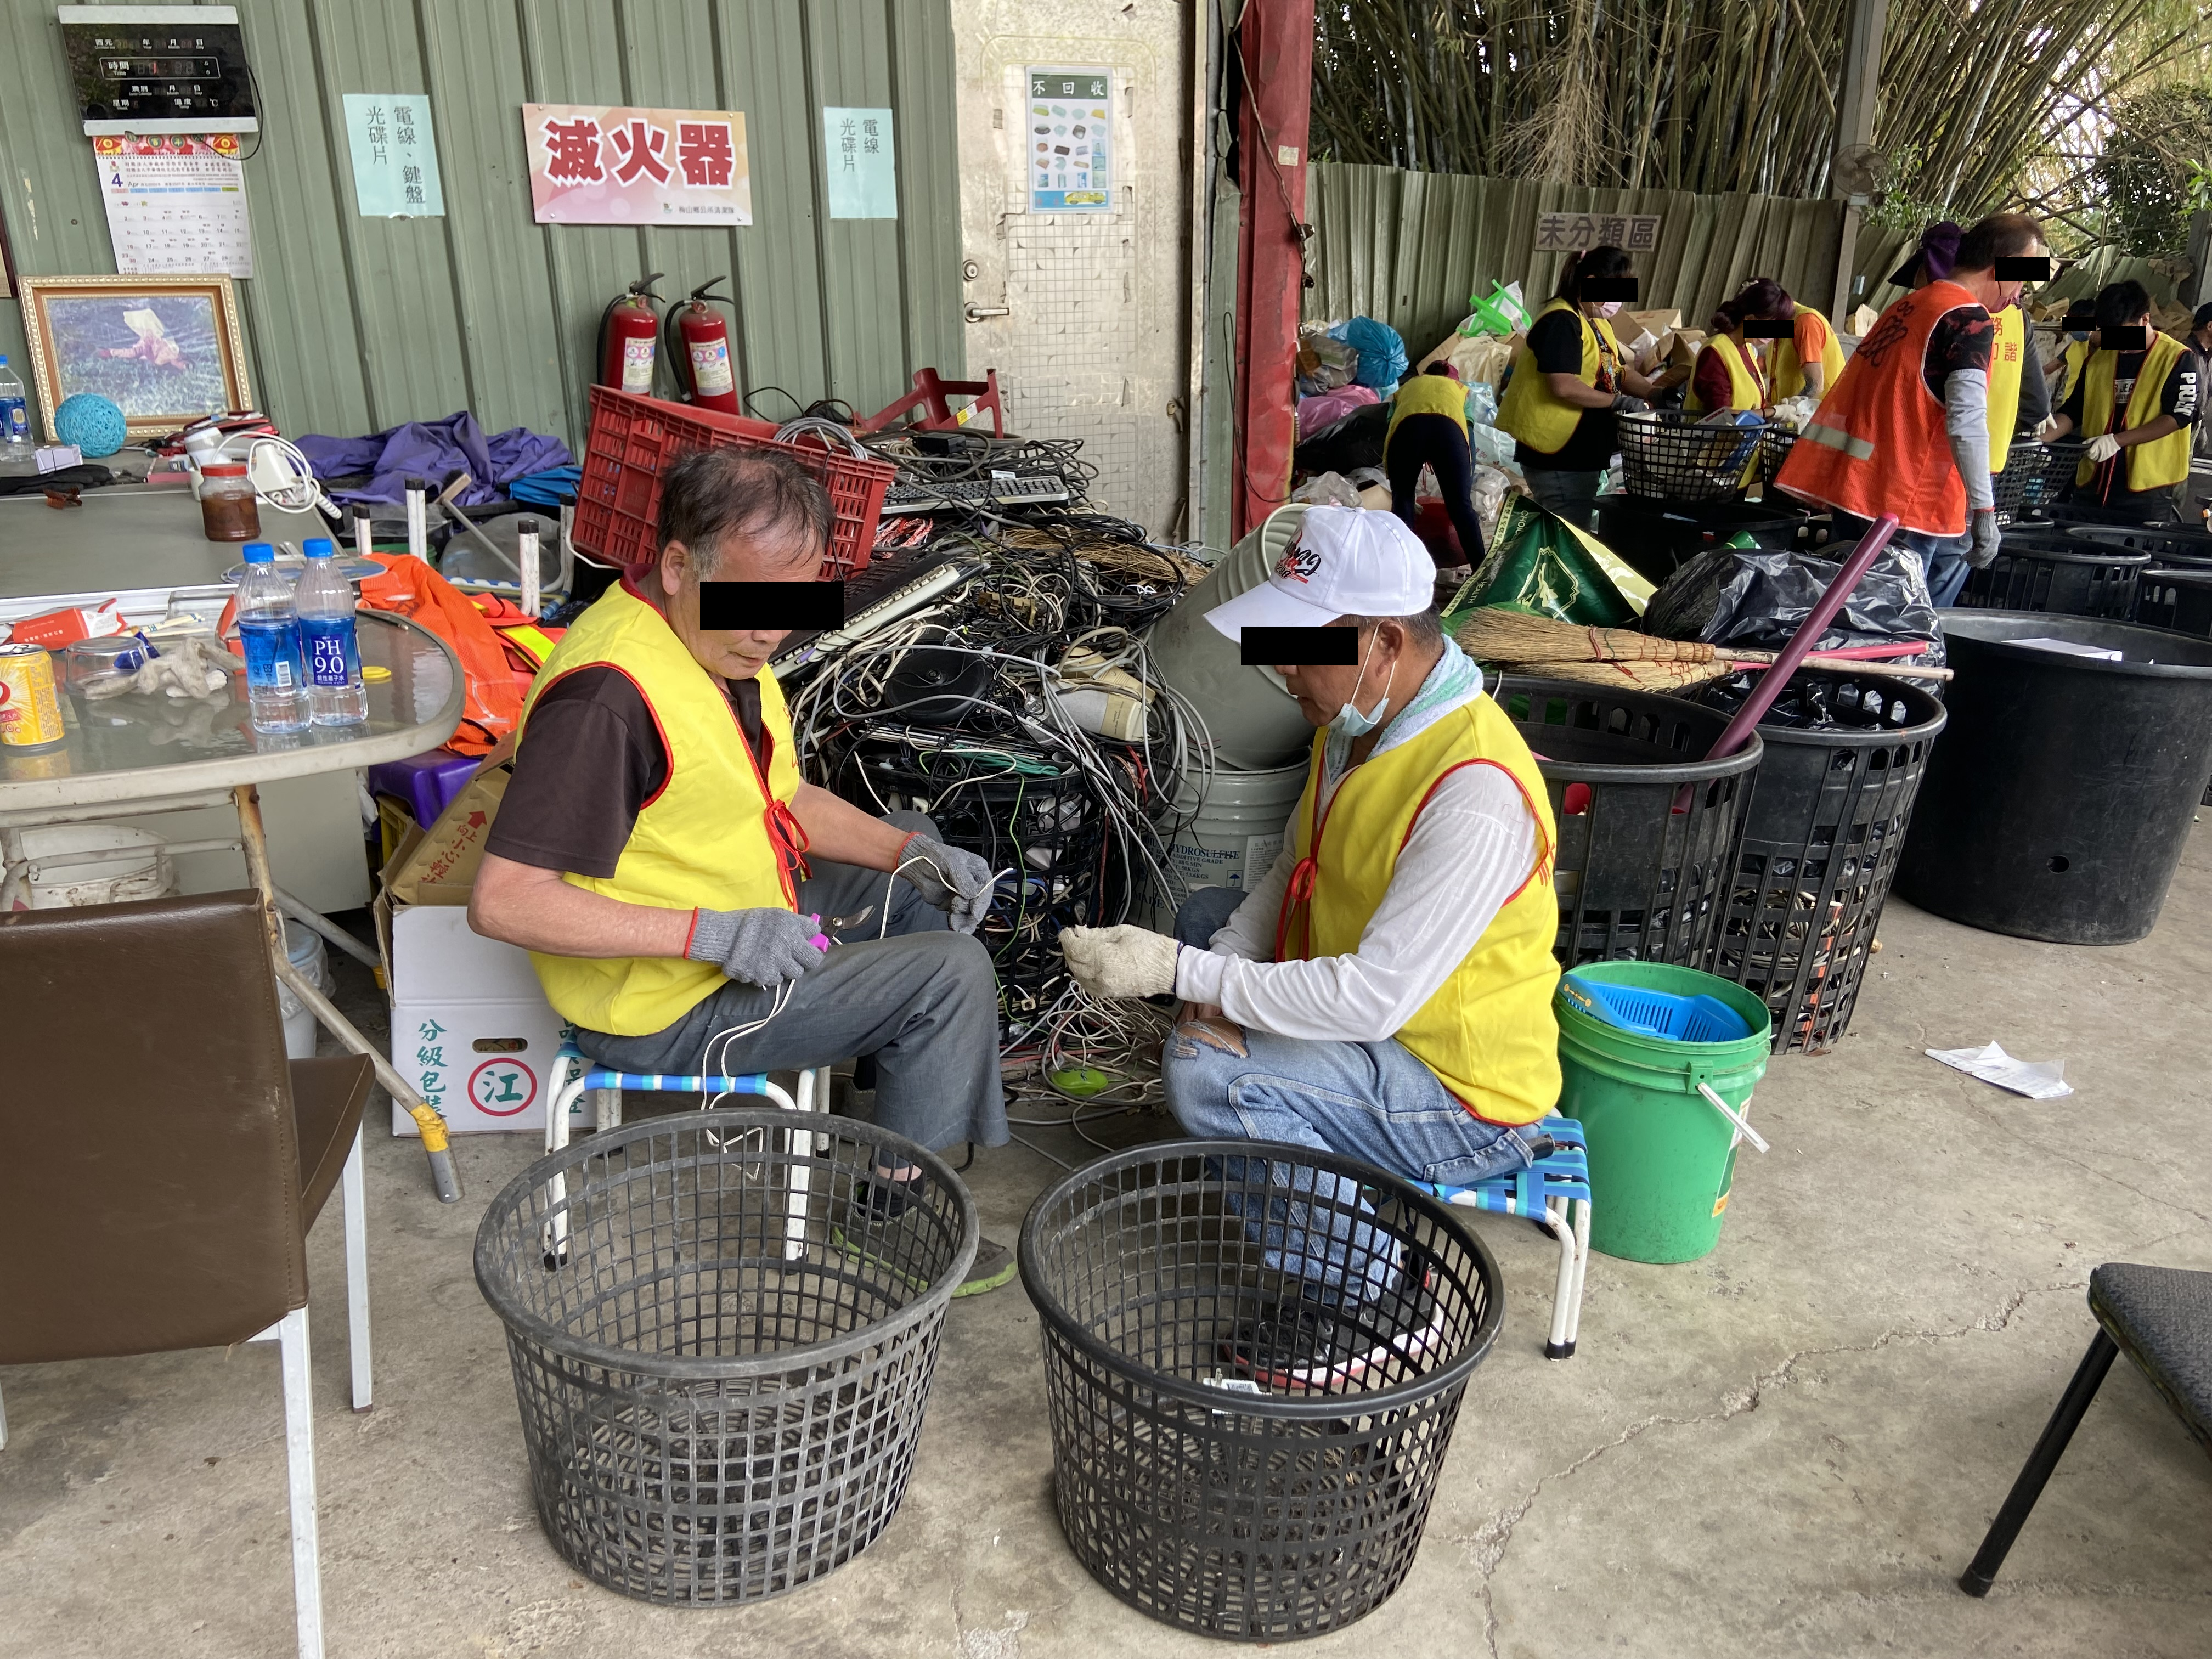 11.社會勞動人於資源回收場內協助將回收電線拆解 分類。